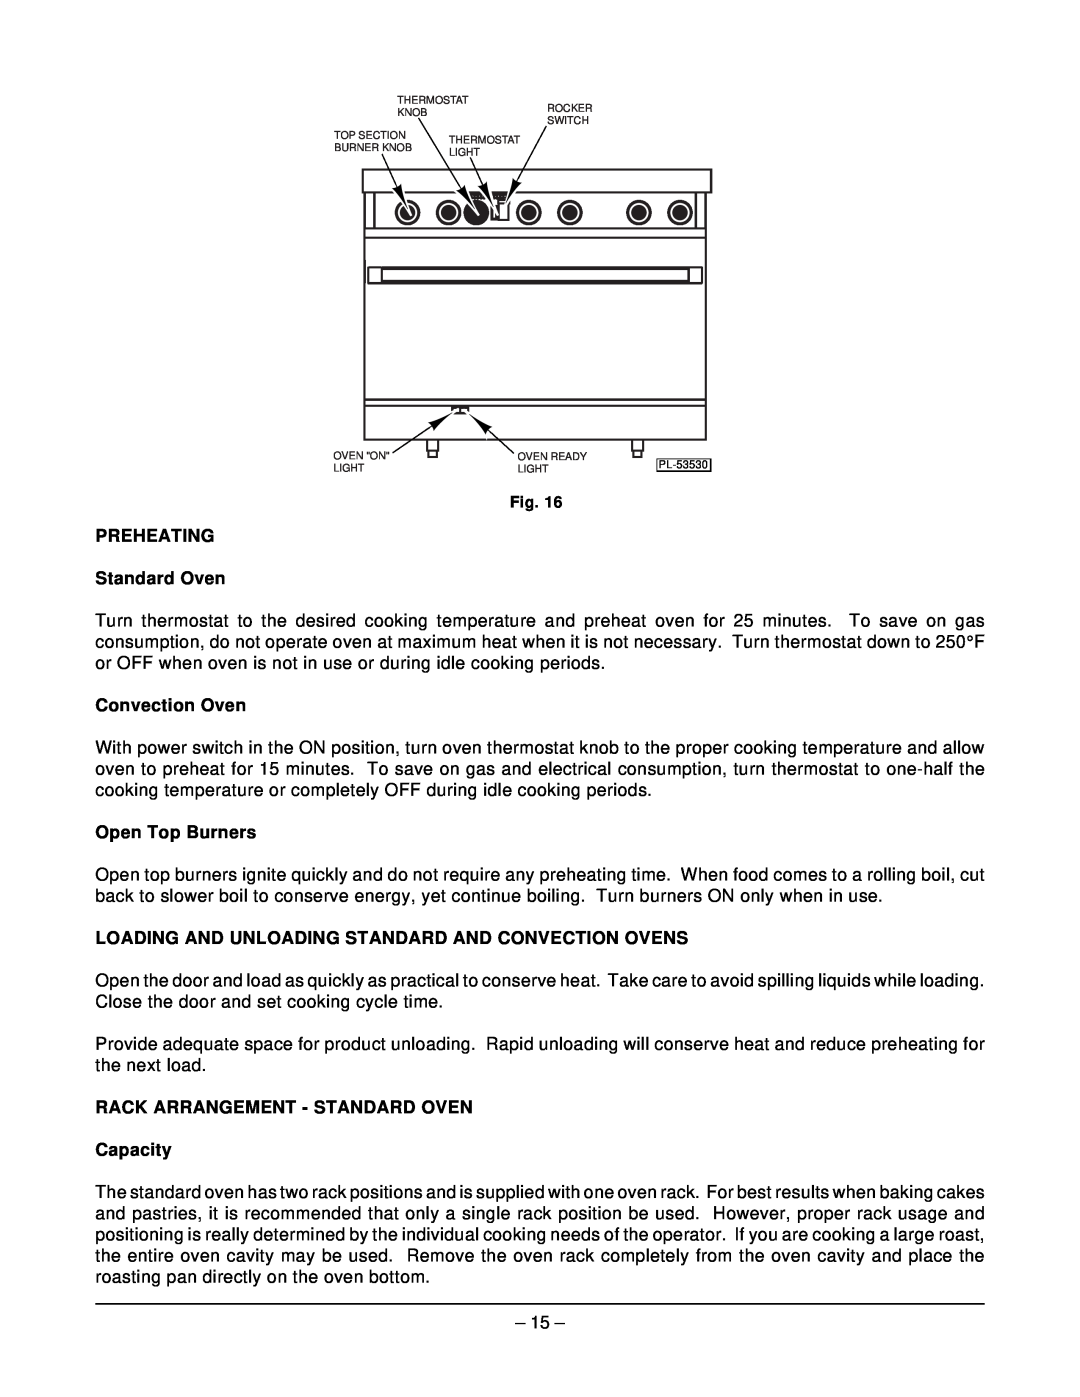 Hobart MGR36C manual PREHEATING Standard Oven, Convection Oven, Open Top Burners, RACK ARRANGEMENT - STANDARD OVEN Capacity 